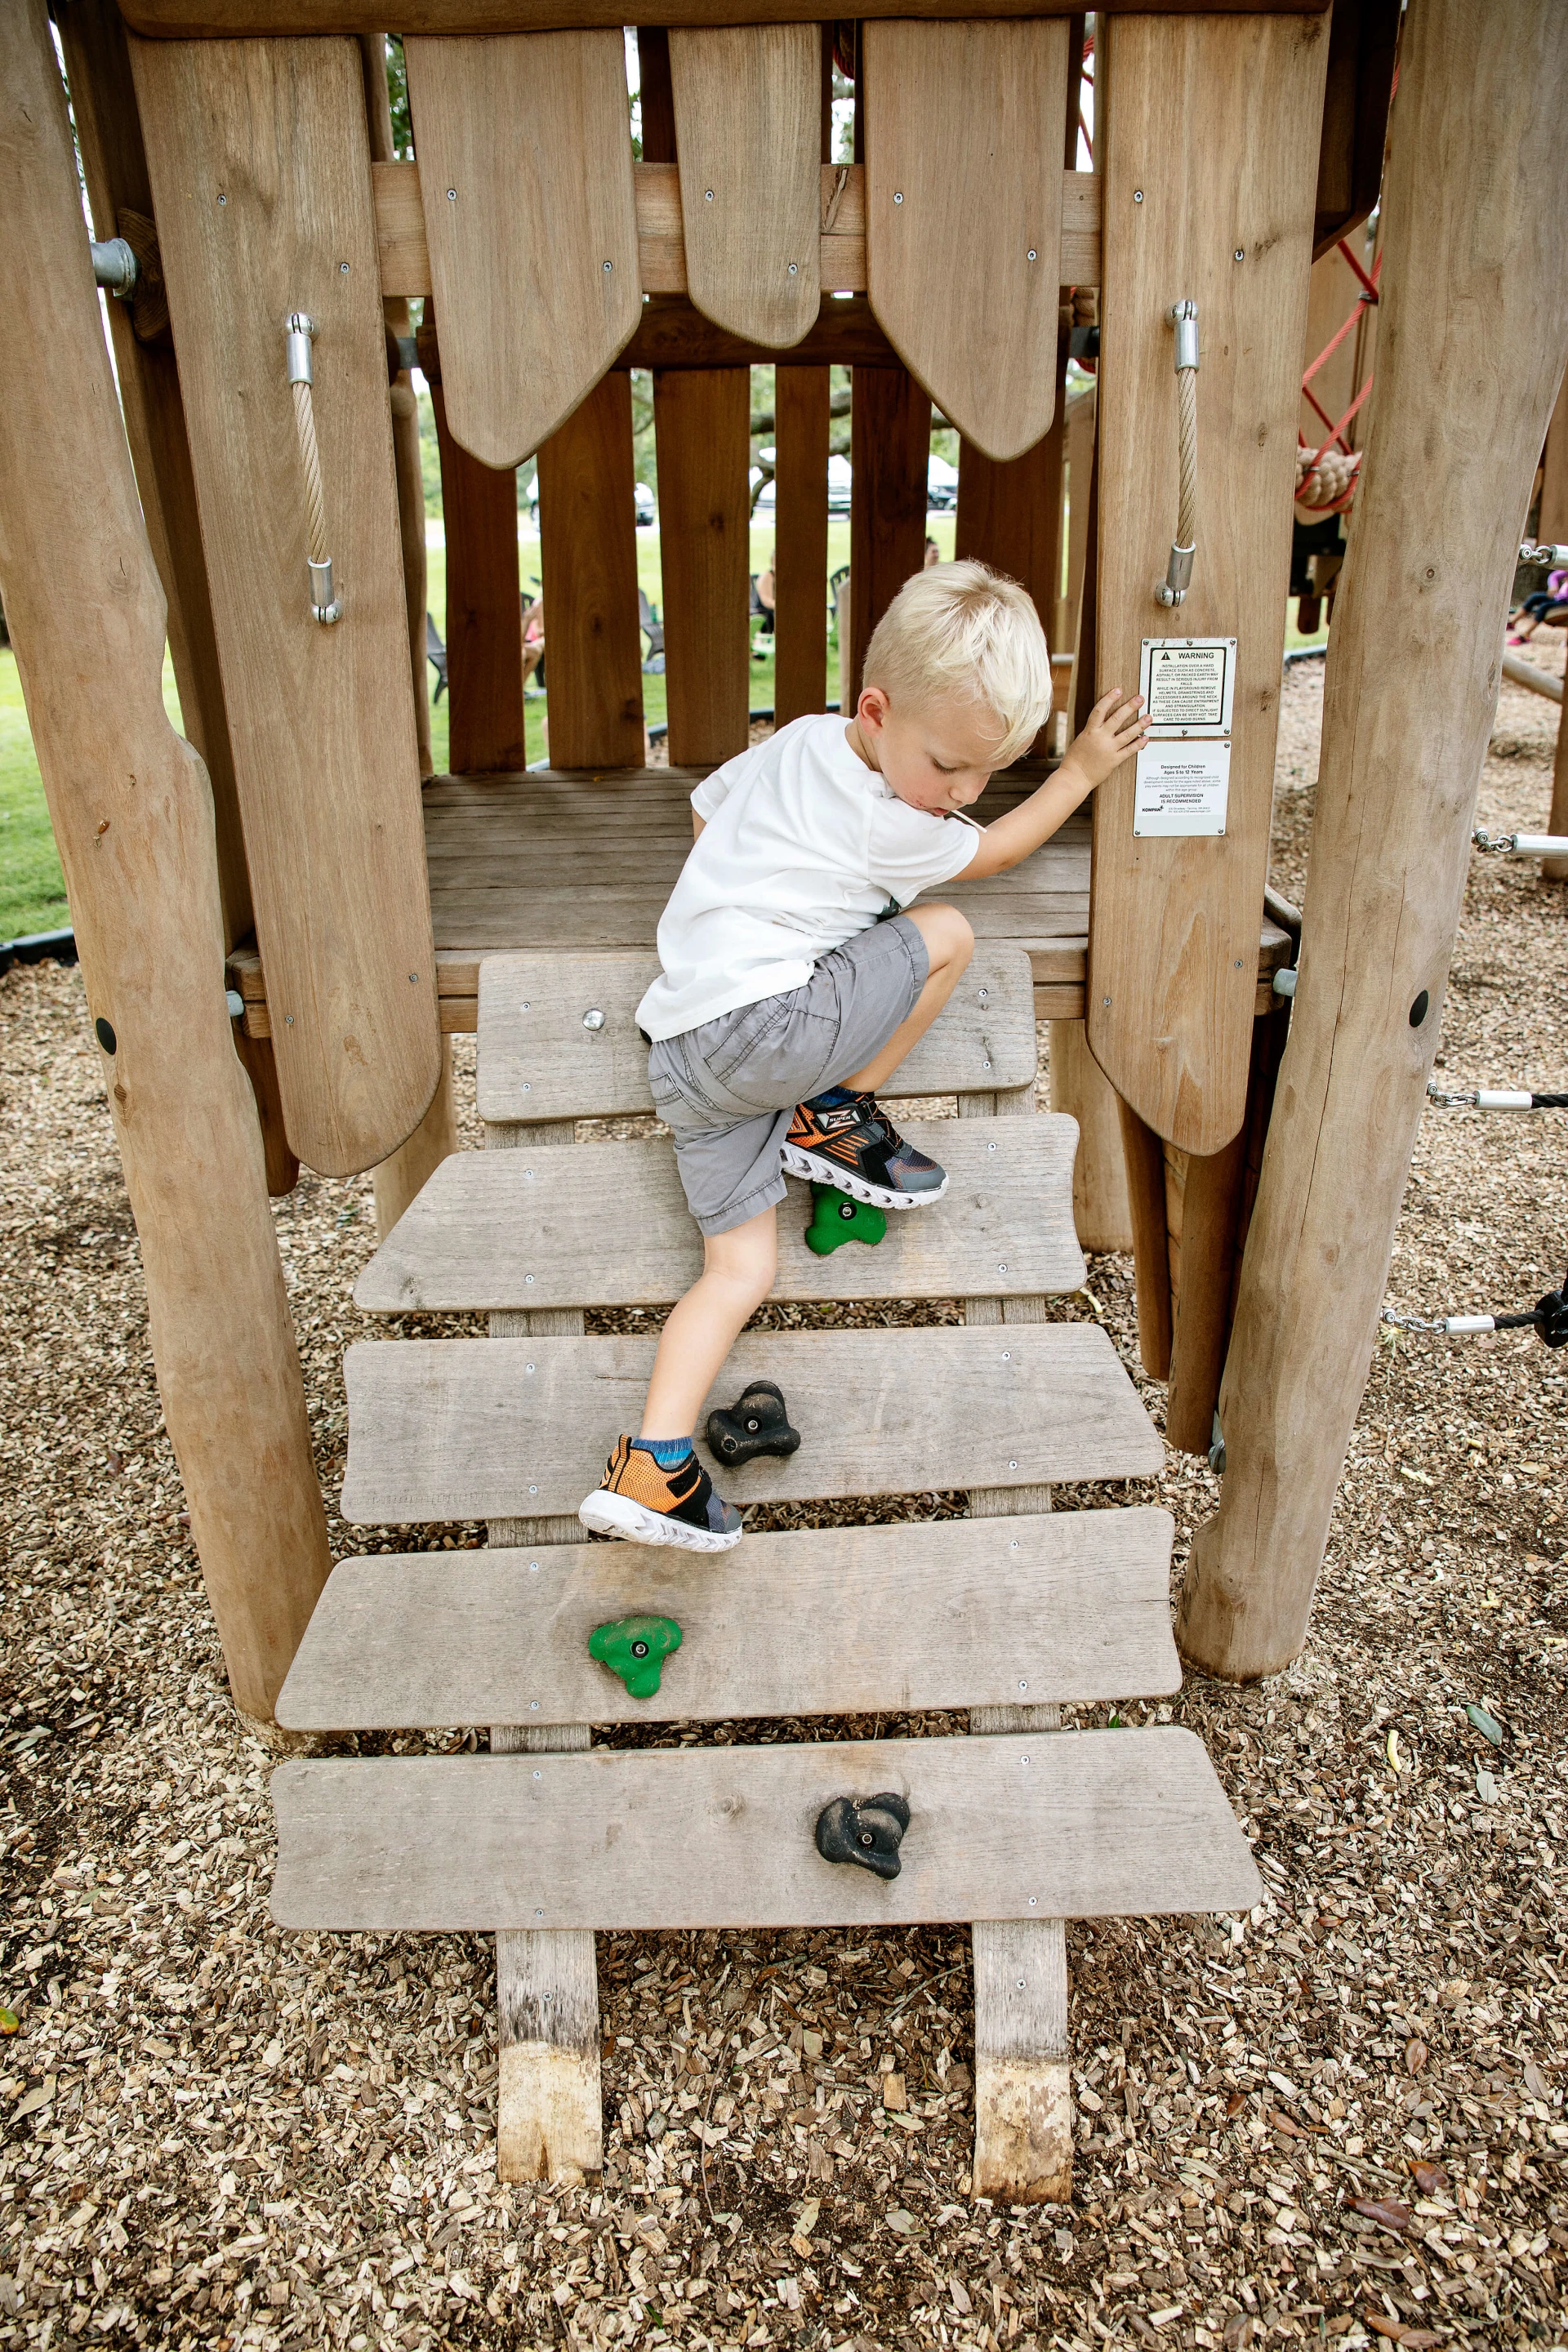 Speeltoestellen voor 3-6 jarigen, jongen klimt op houten speeltuin